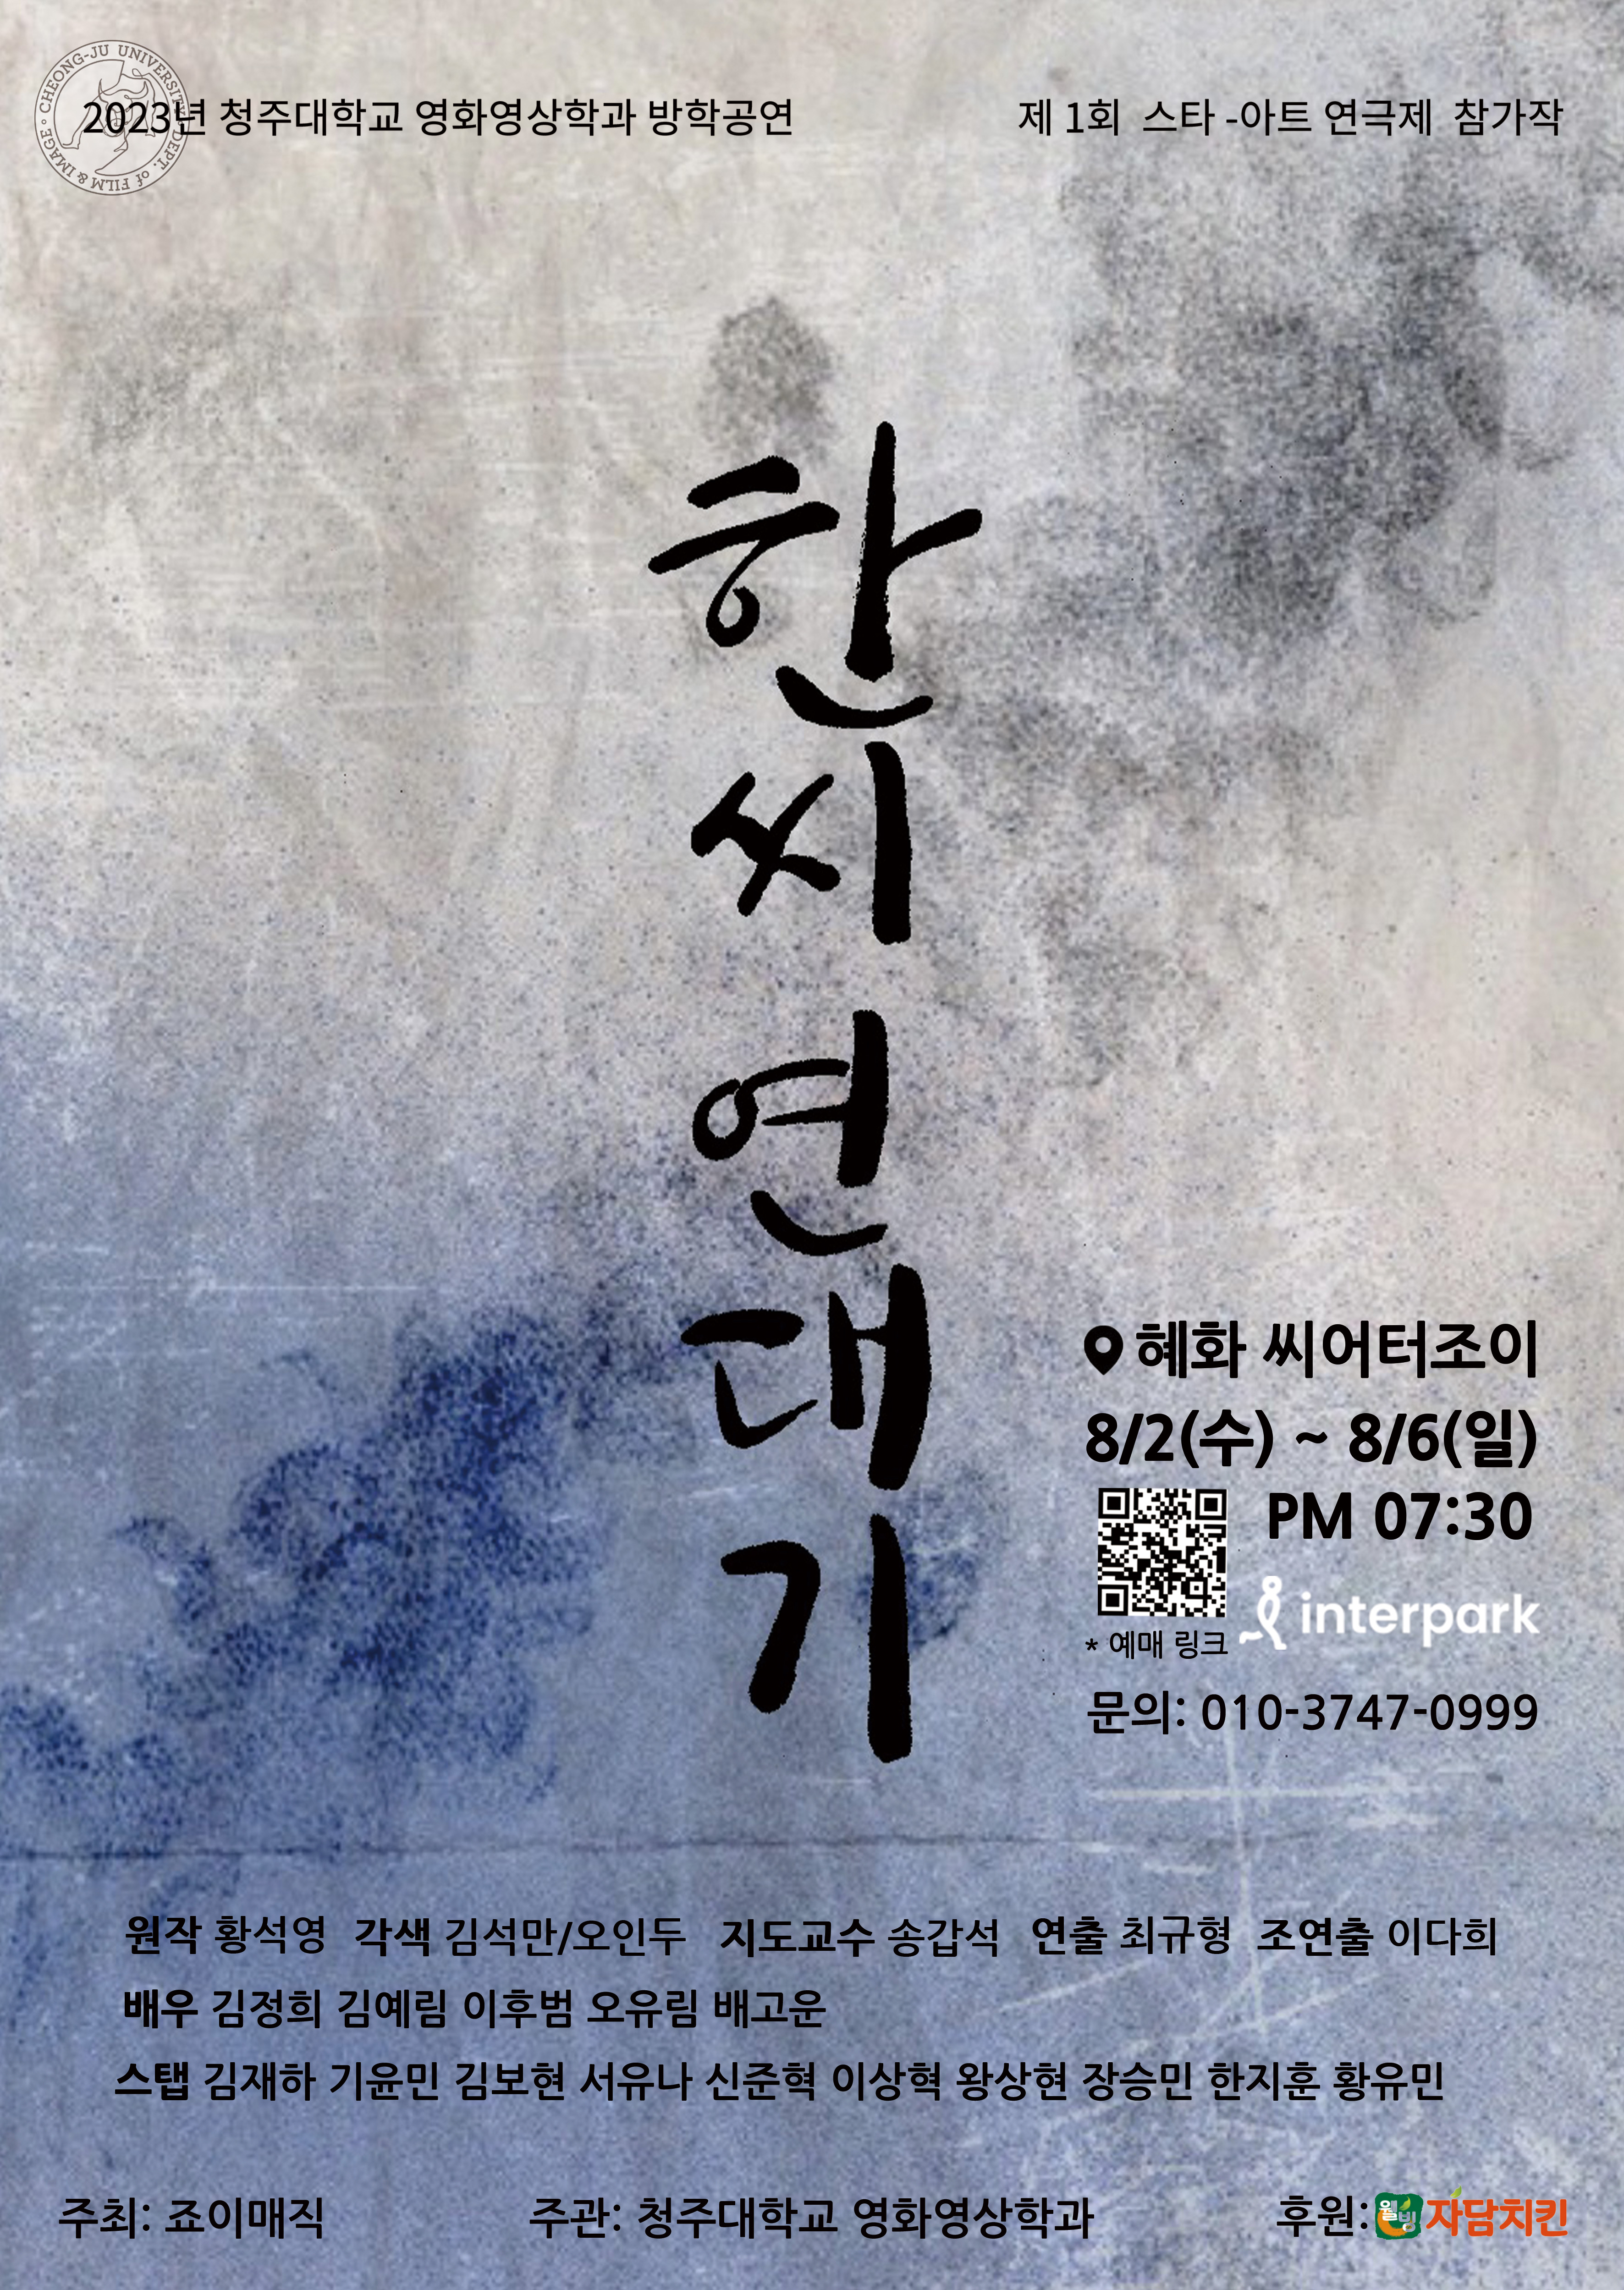 청주대학교 영화영상학과가 ‘제1회 스타-아트 연극제’에 출전해 다음달 2일부터 6일까지 서울 대학로 시어터 조이에서 공연을 펼친다. 사진은 청주대 공연작품인 ‘한씨연대기’ 포스터.